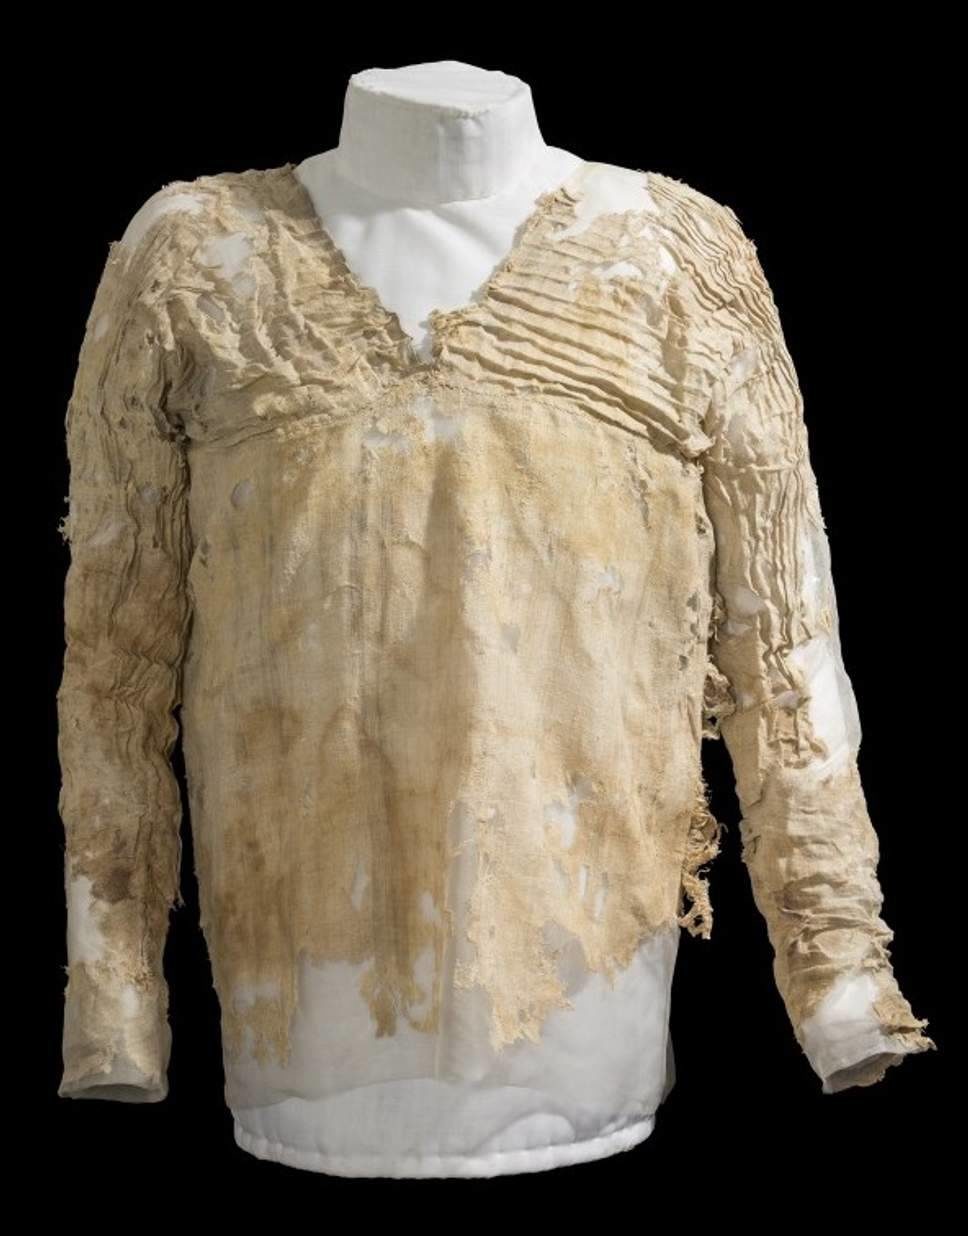 tarkhan dress oldest woven garment